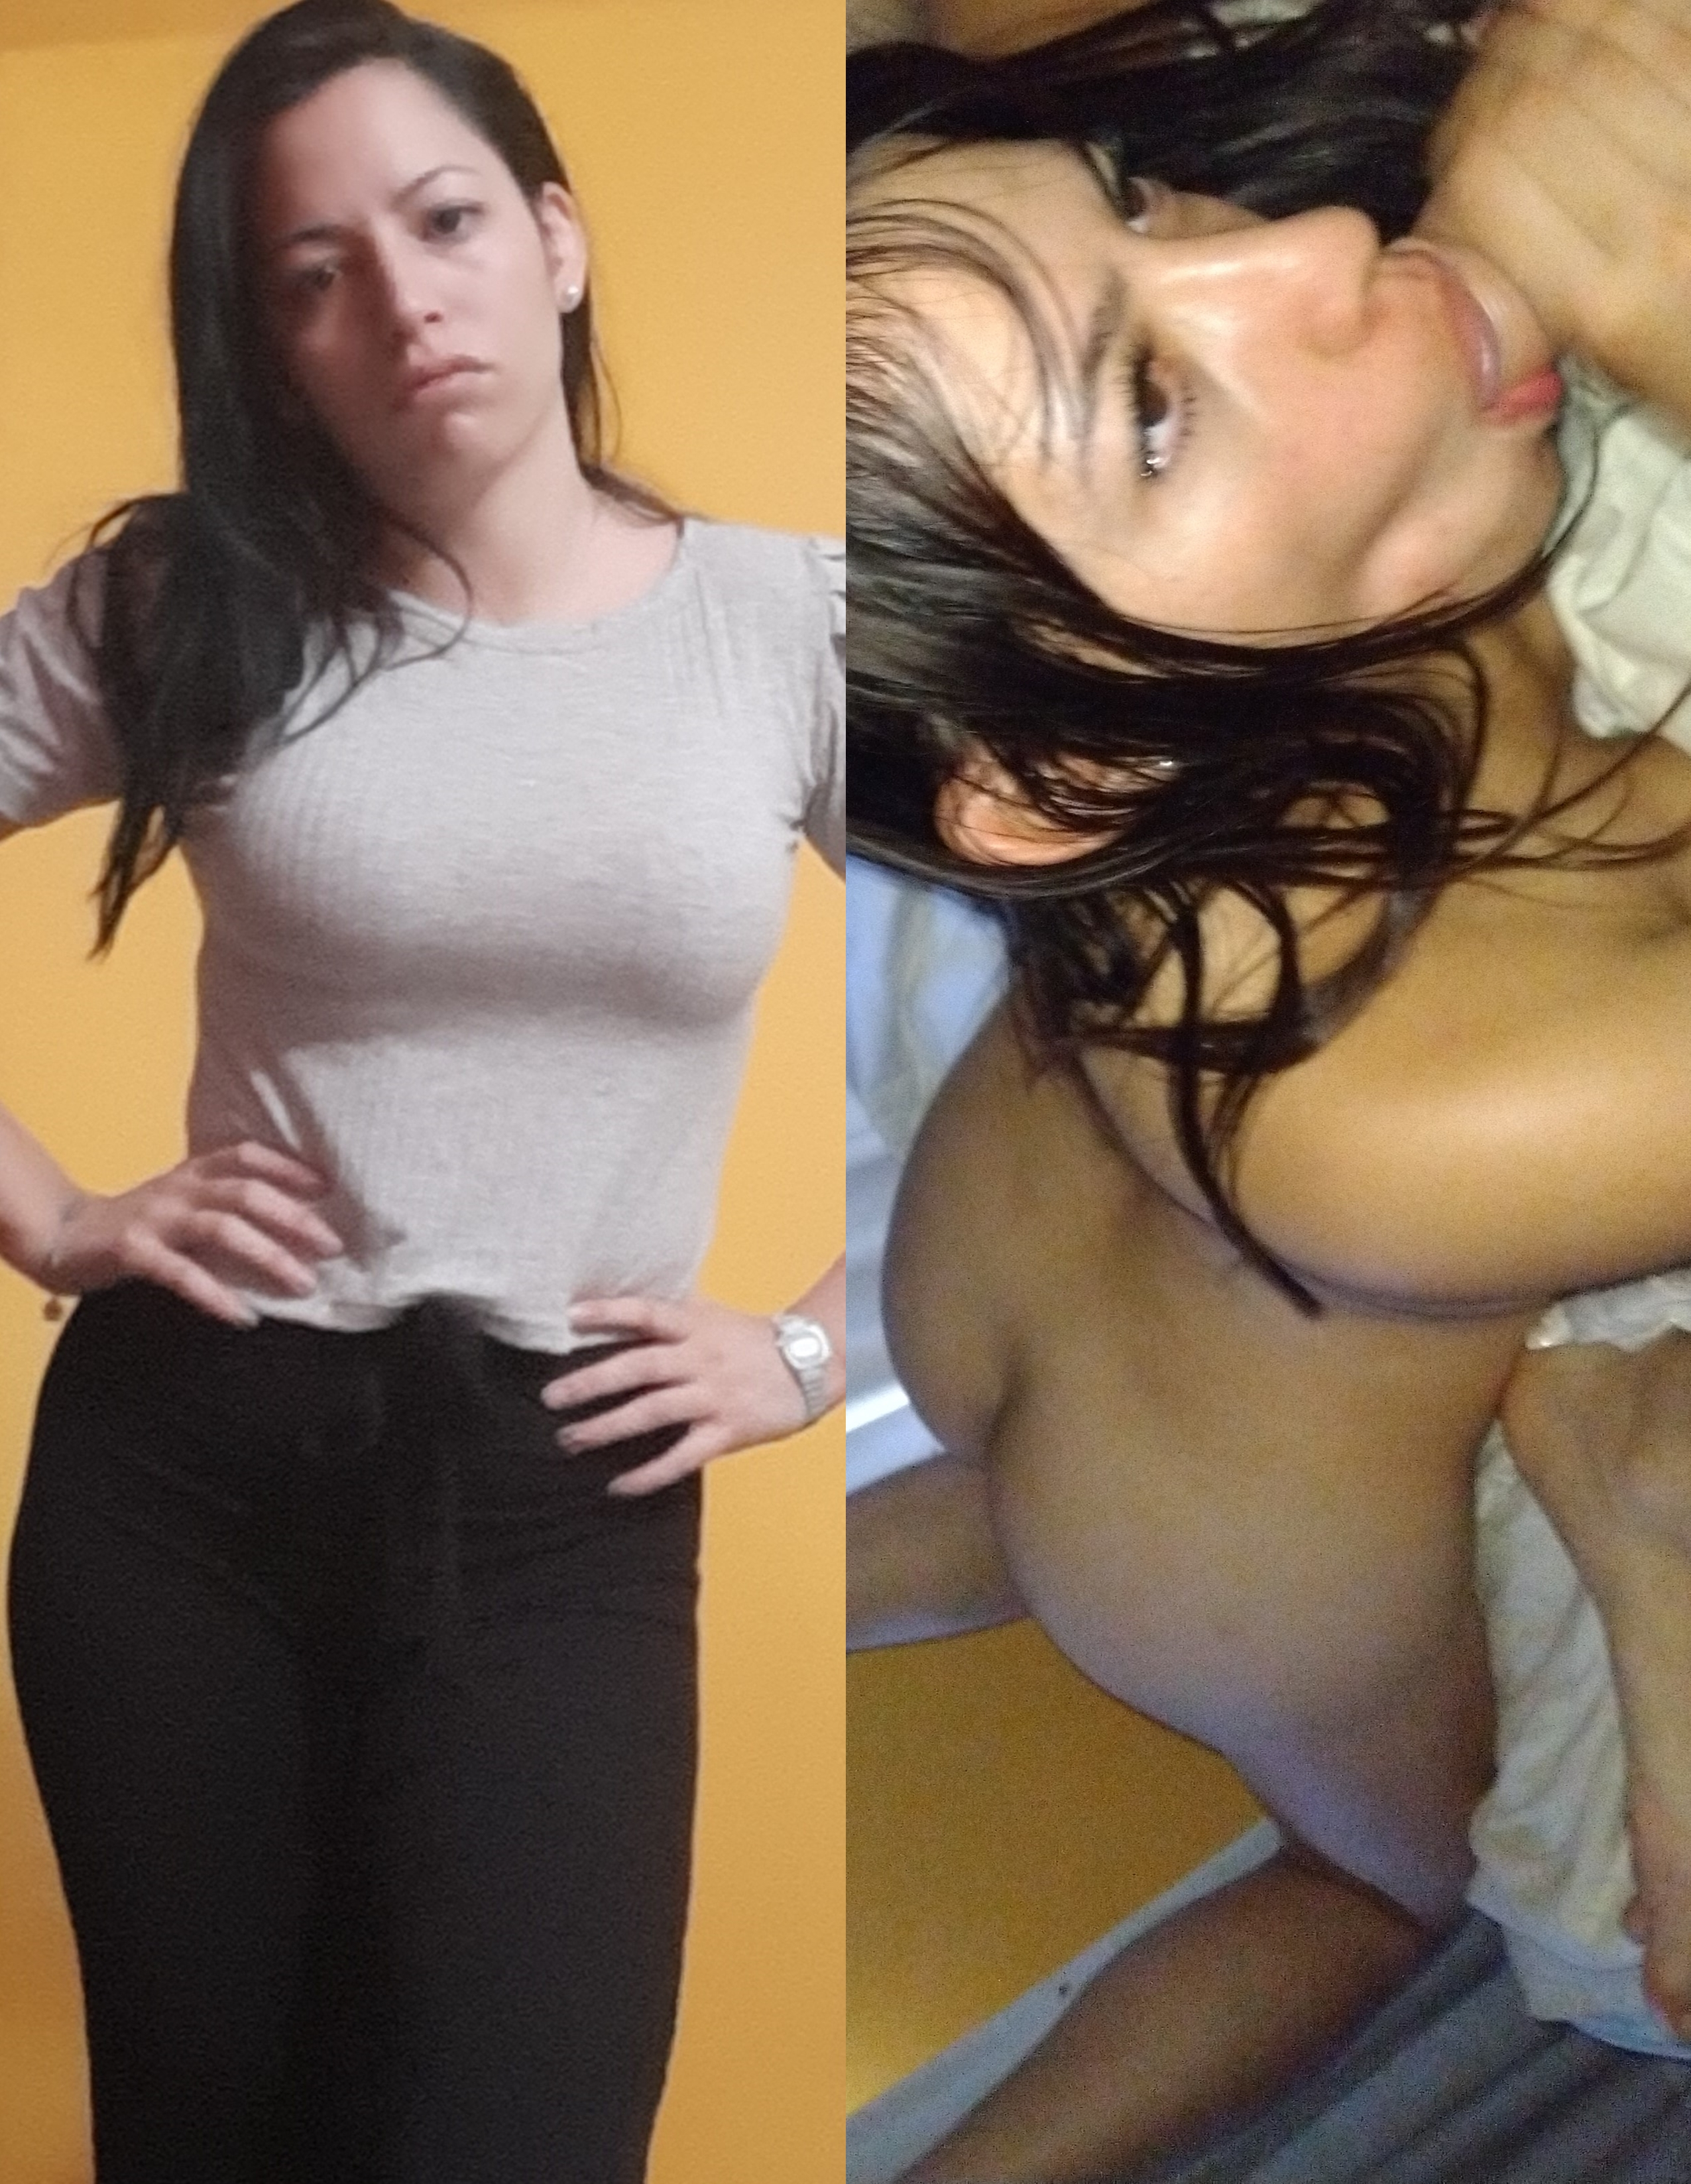 Paraguay babe naked porno actress - N